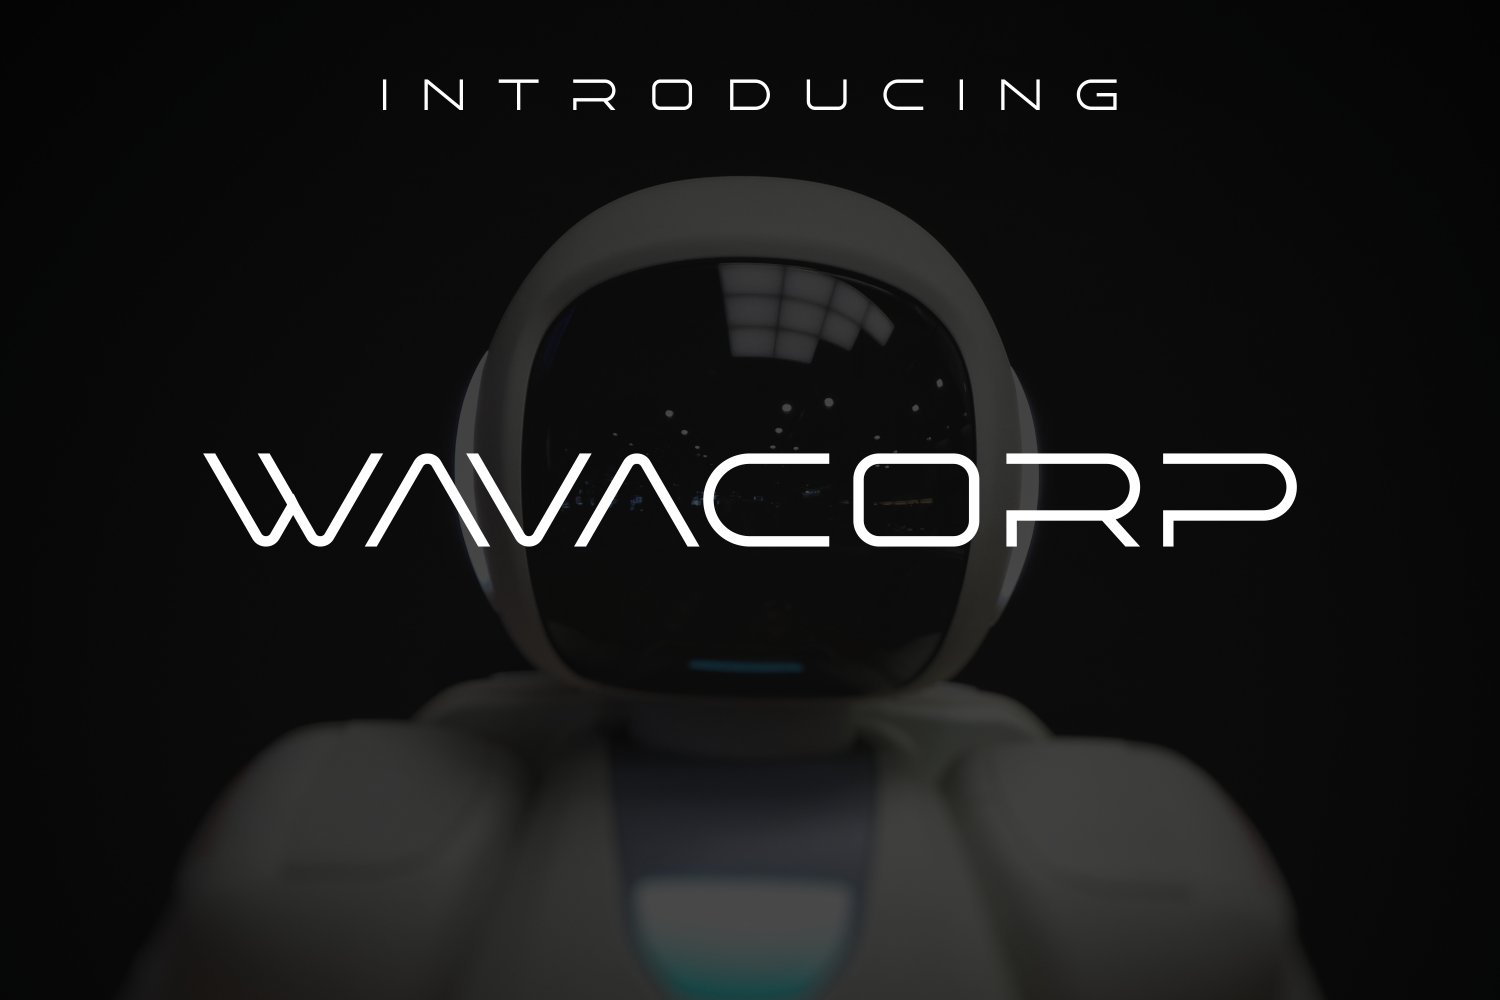 Wavacorp sans serif font cover image.